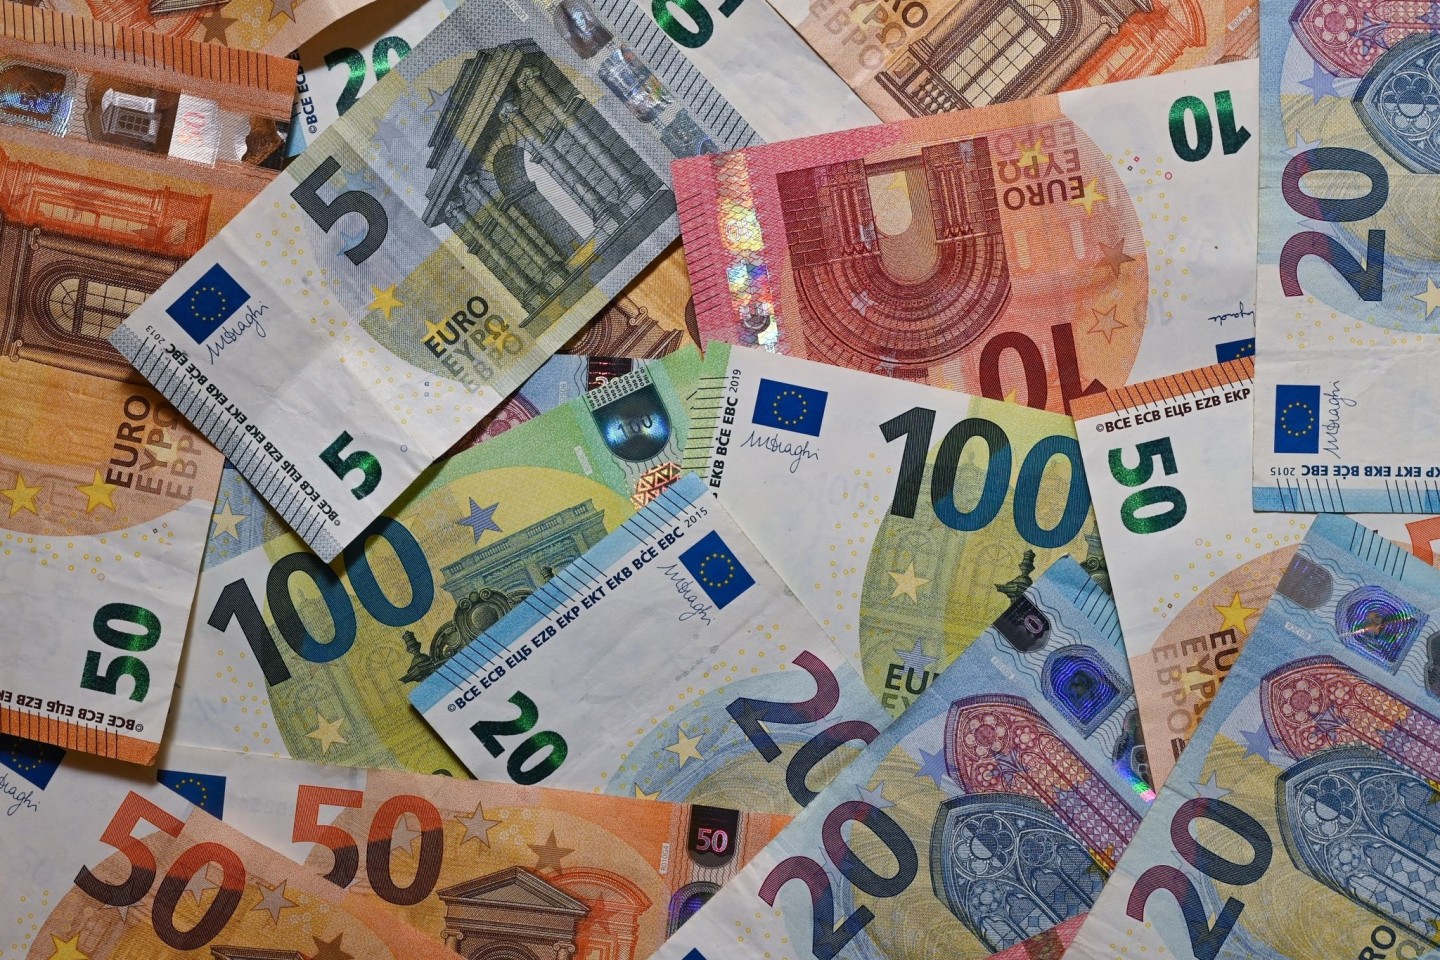 Eurobanknoten liegen auf einem Tisch (Illustration).